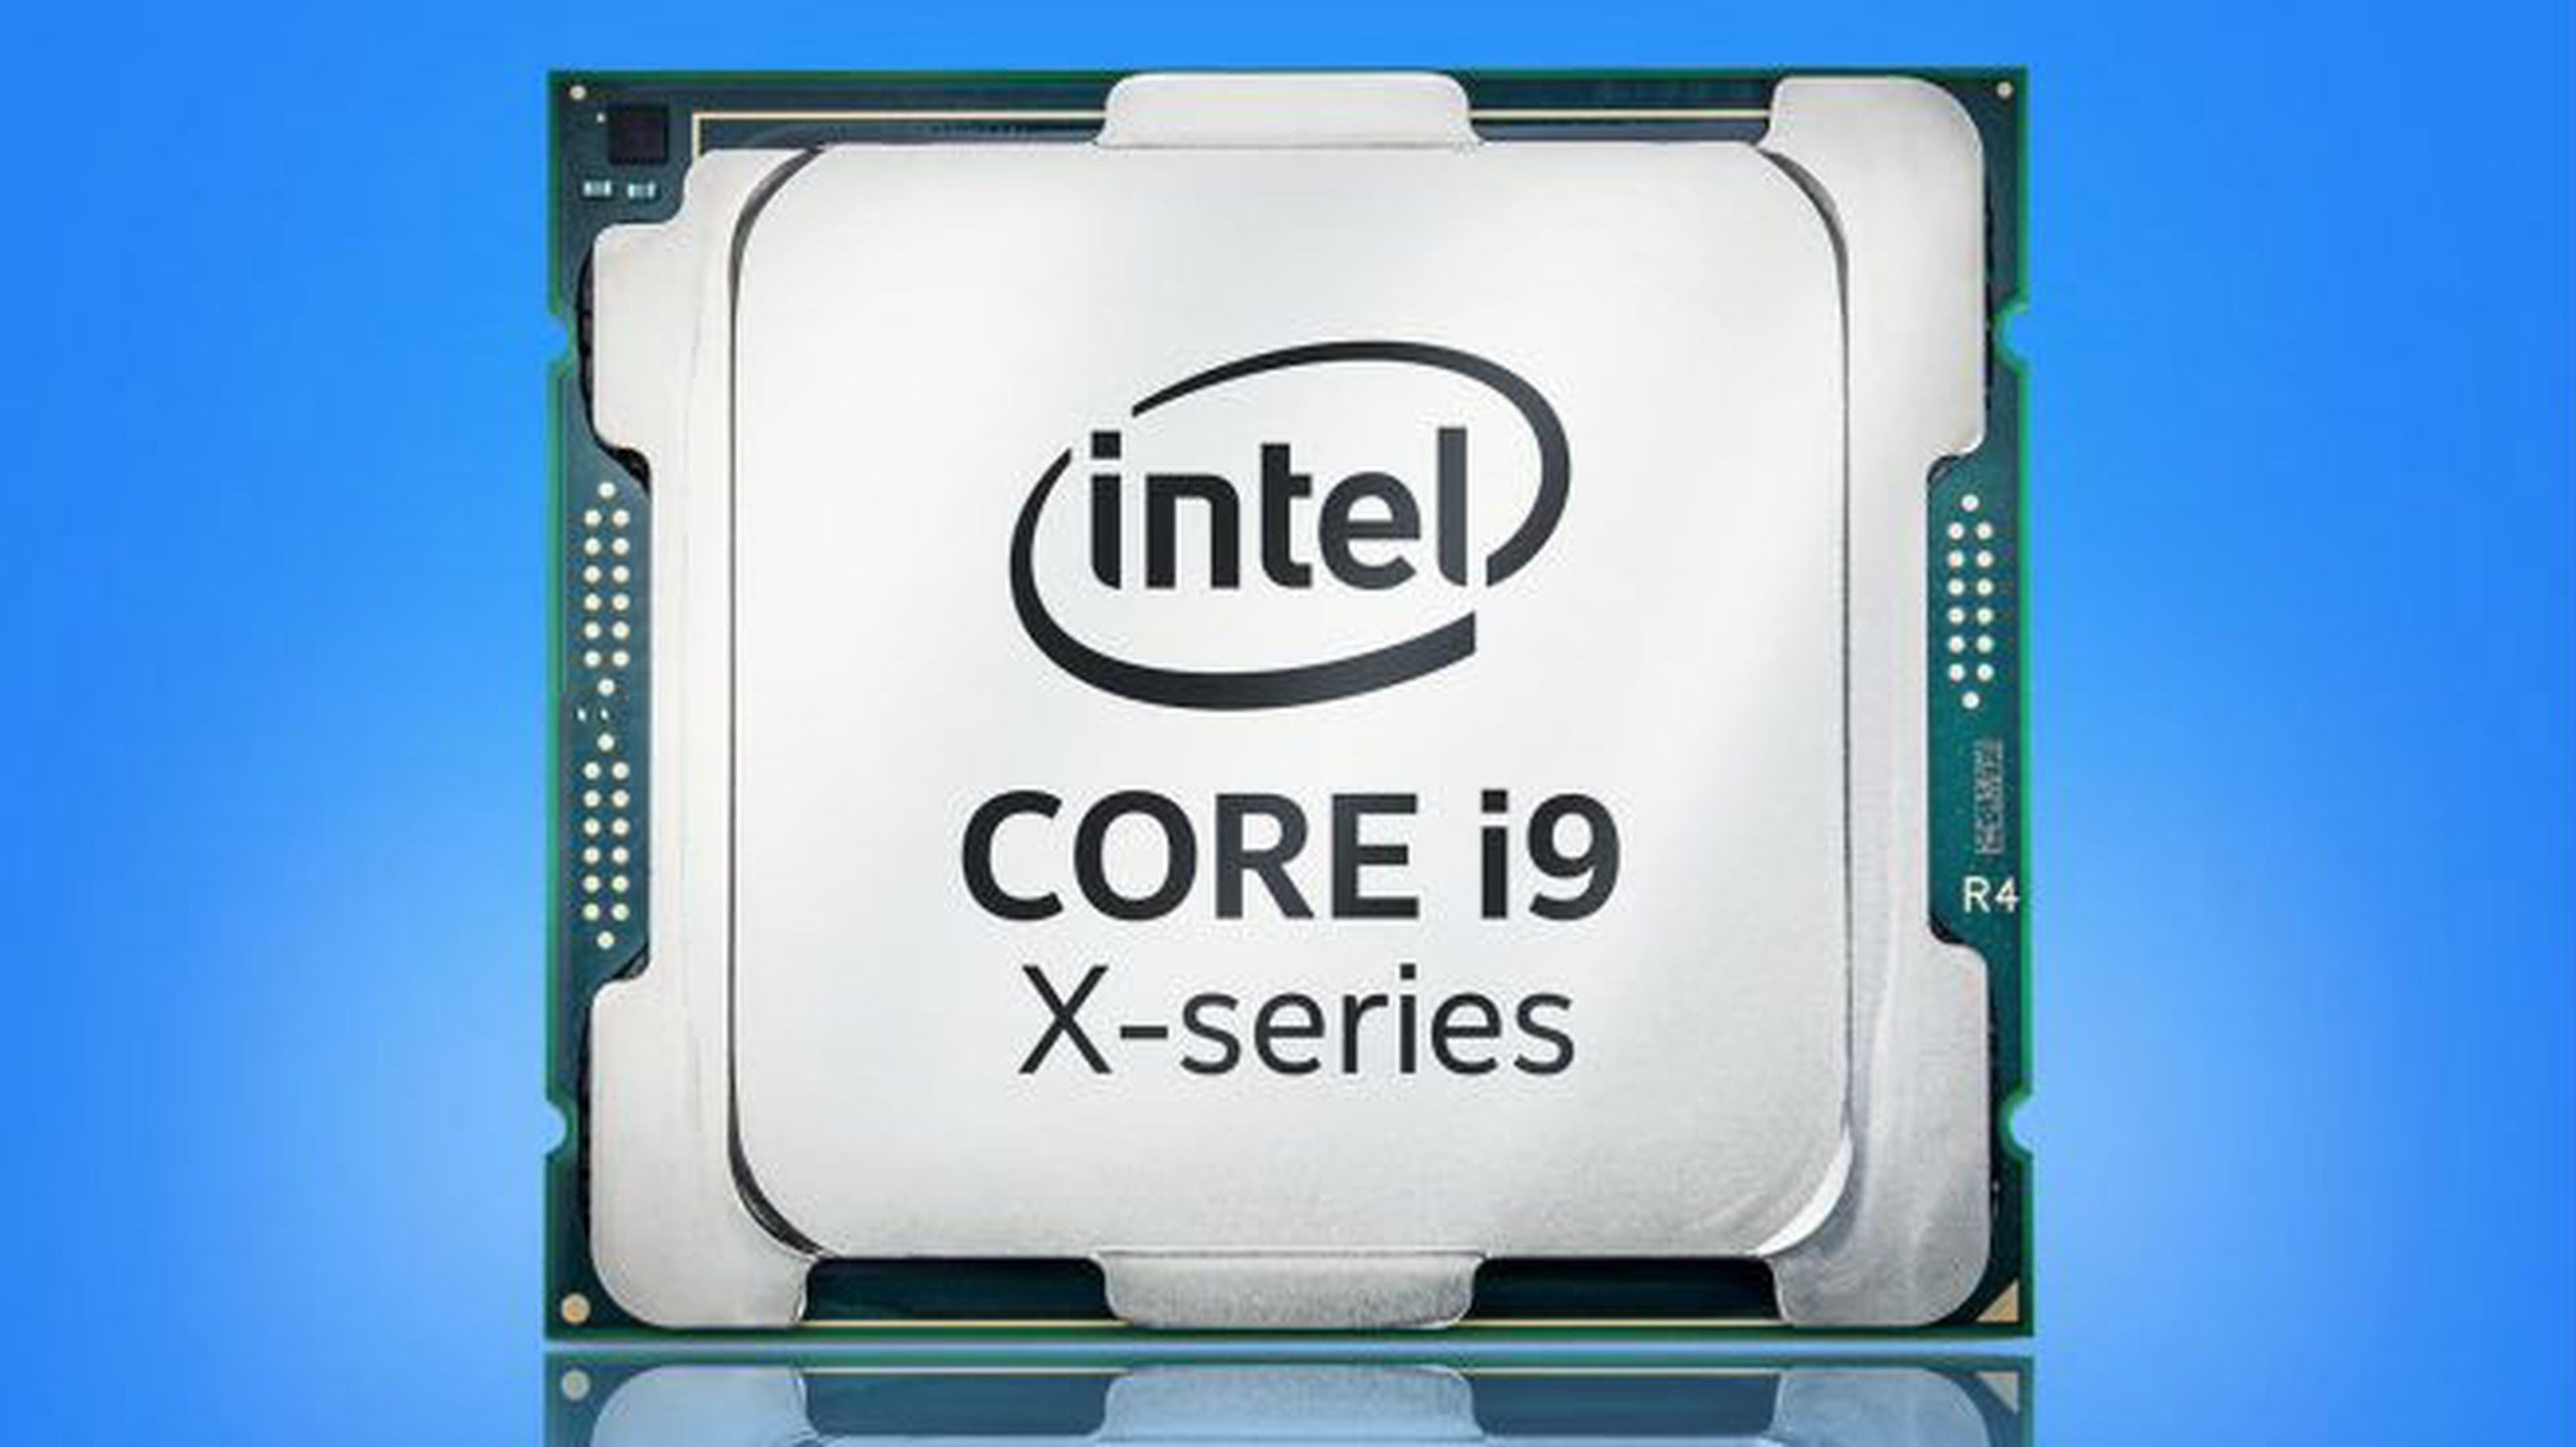 Precio y fecha de lanzamiento de los Intel Core i9.